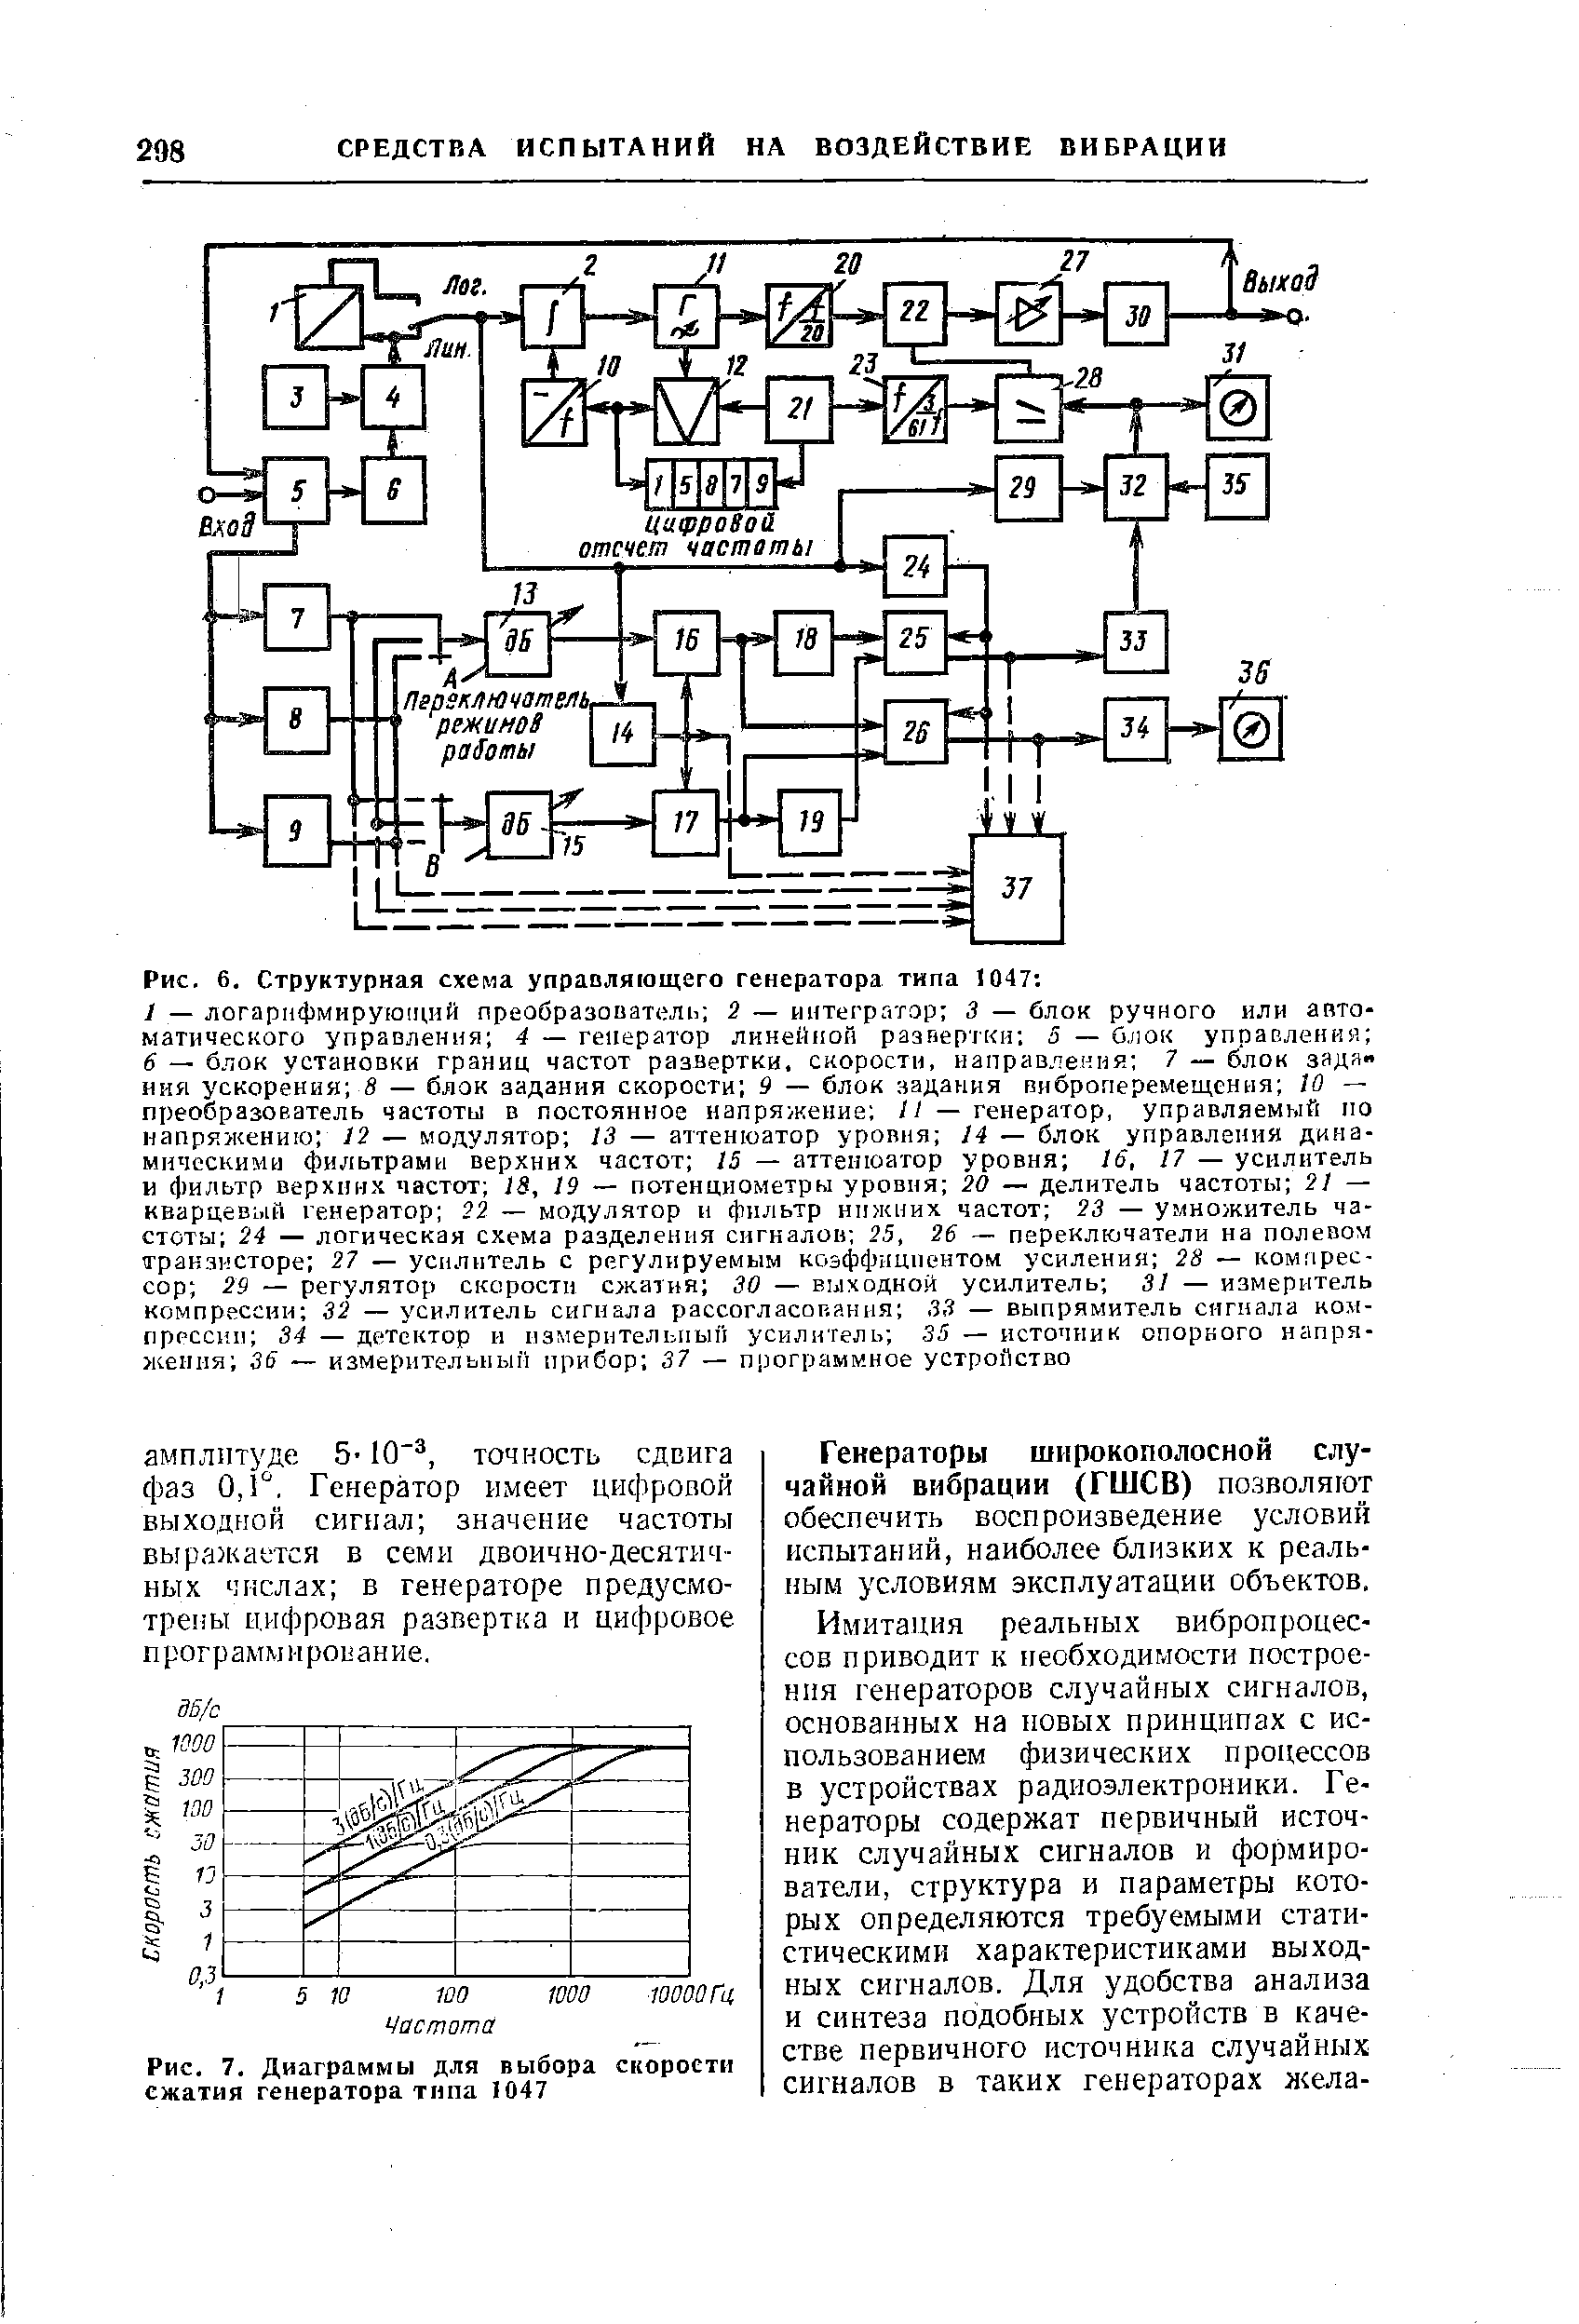 Рис. 7. Диаграммы для выбора скороети сжатия генератора типа 1047
